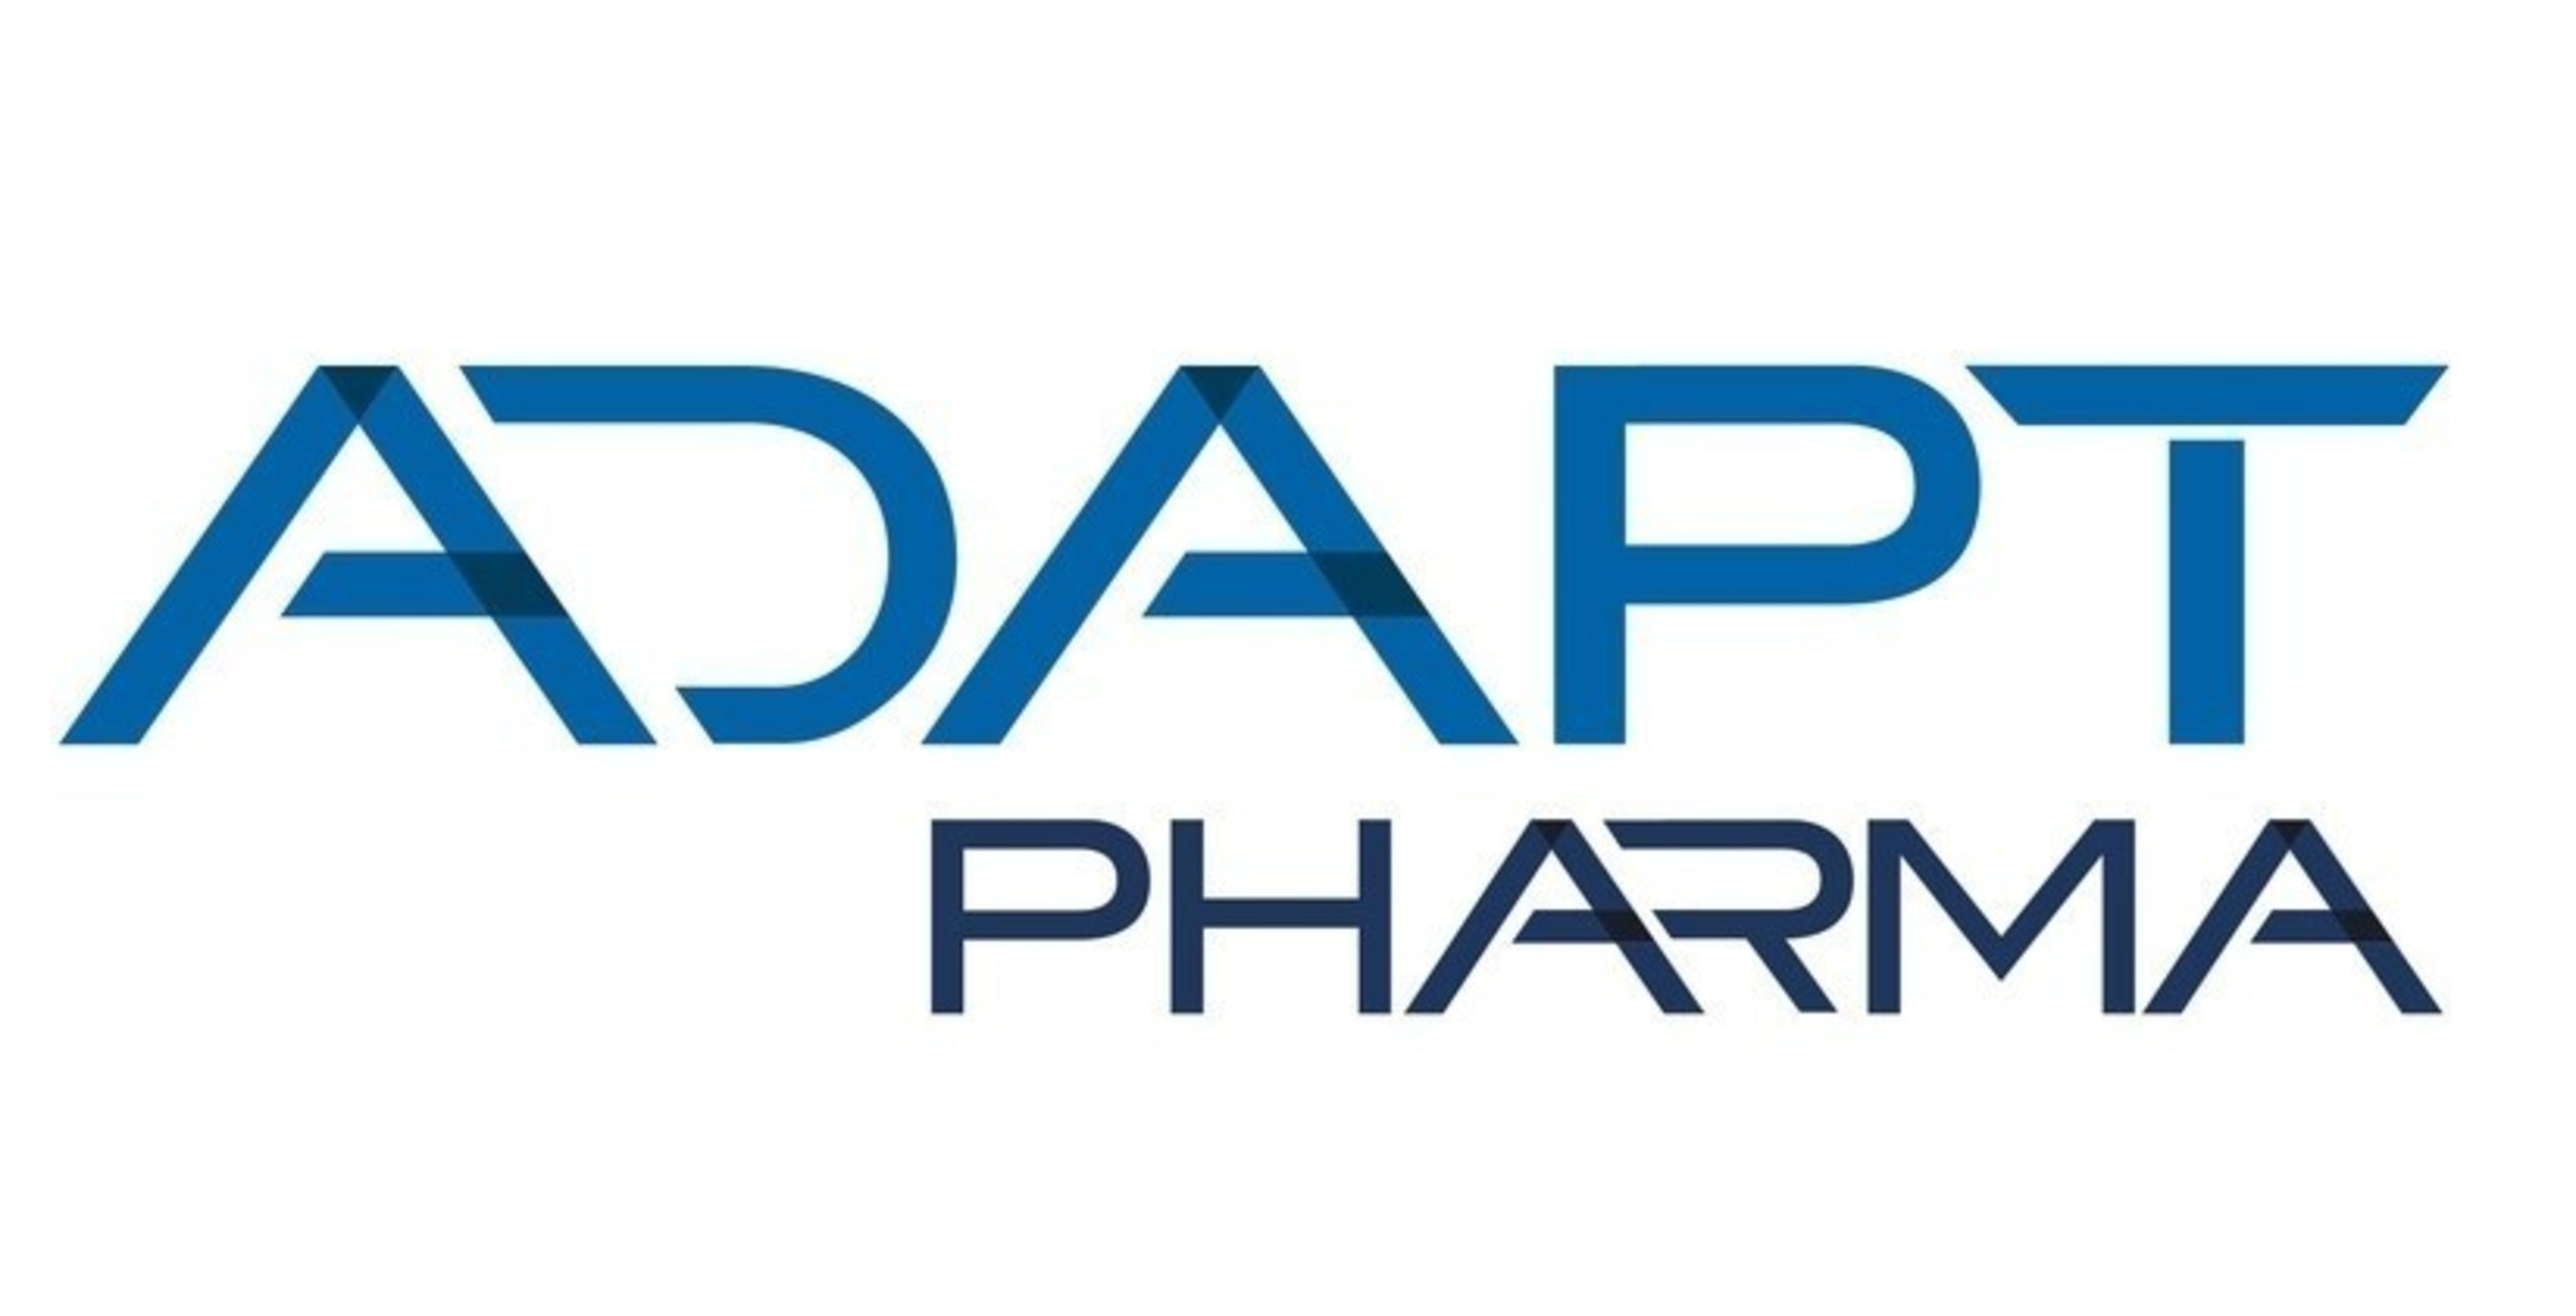 Adapt Pharma